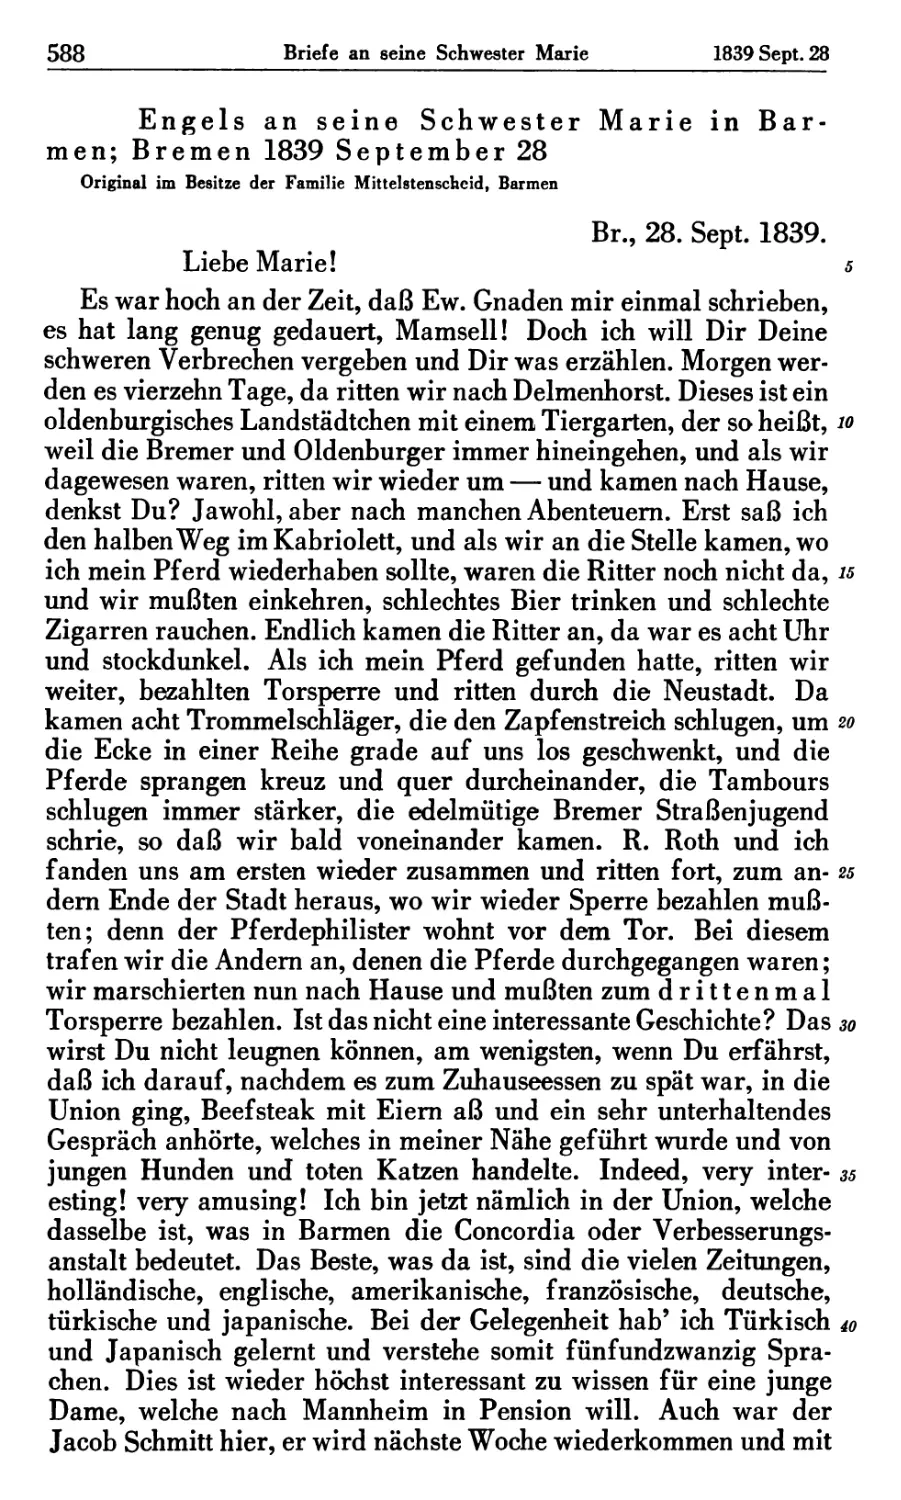 Engels an seine Schwester Marie in Barmen; Bremen 1839 September 28